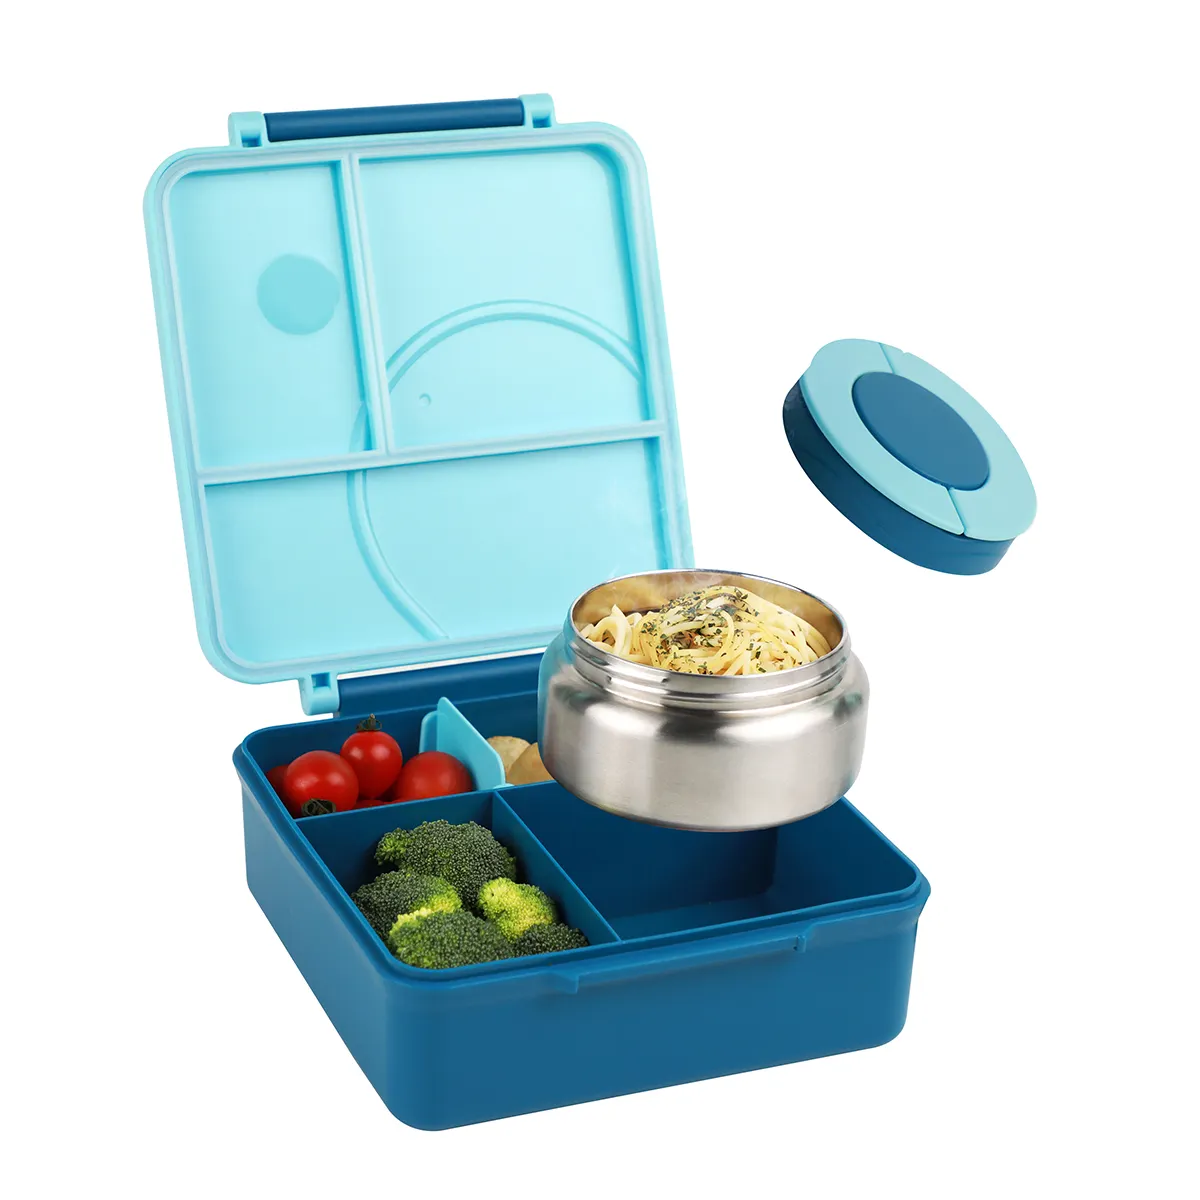 กล่องอาหารกลางวันเบนโตะสำหรับเด็กกล่องอาหารกลางวันพร้อมโถสำหรับเด็กปราศจากสาร BPA